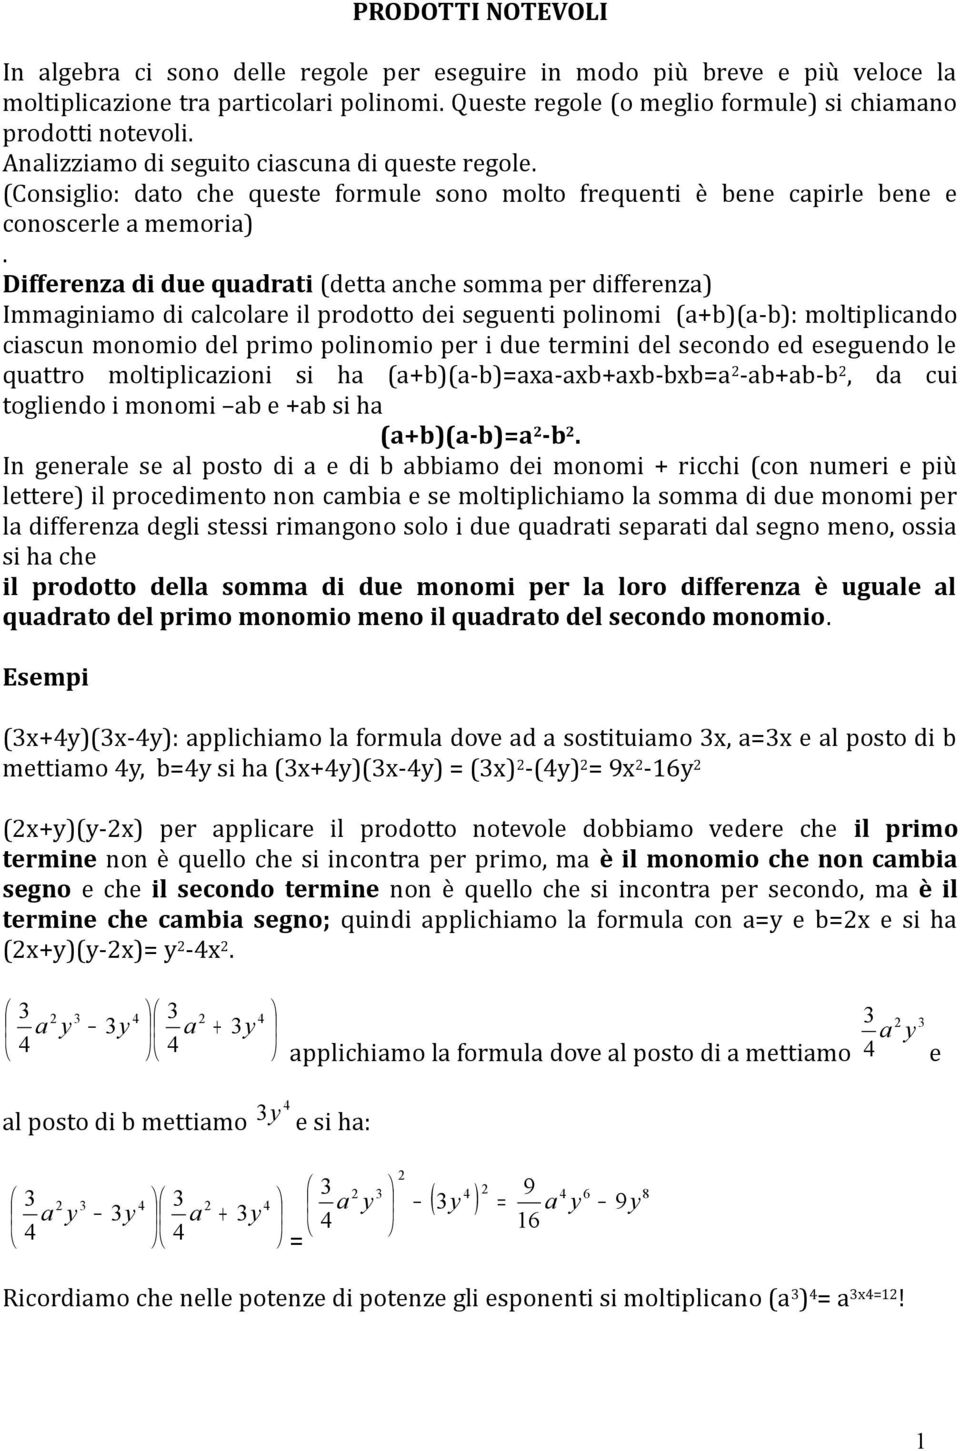 Differenz di due qudrti (dett nche somm per differenz Immginimo di clcolre il prodotto dei seguenti polinomi ((-: moltiplicndo ciscun monomio del primo polinomio per i due termini del secondo ed